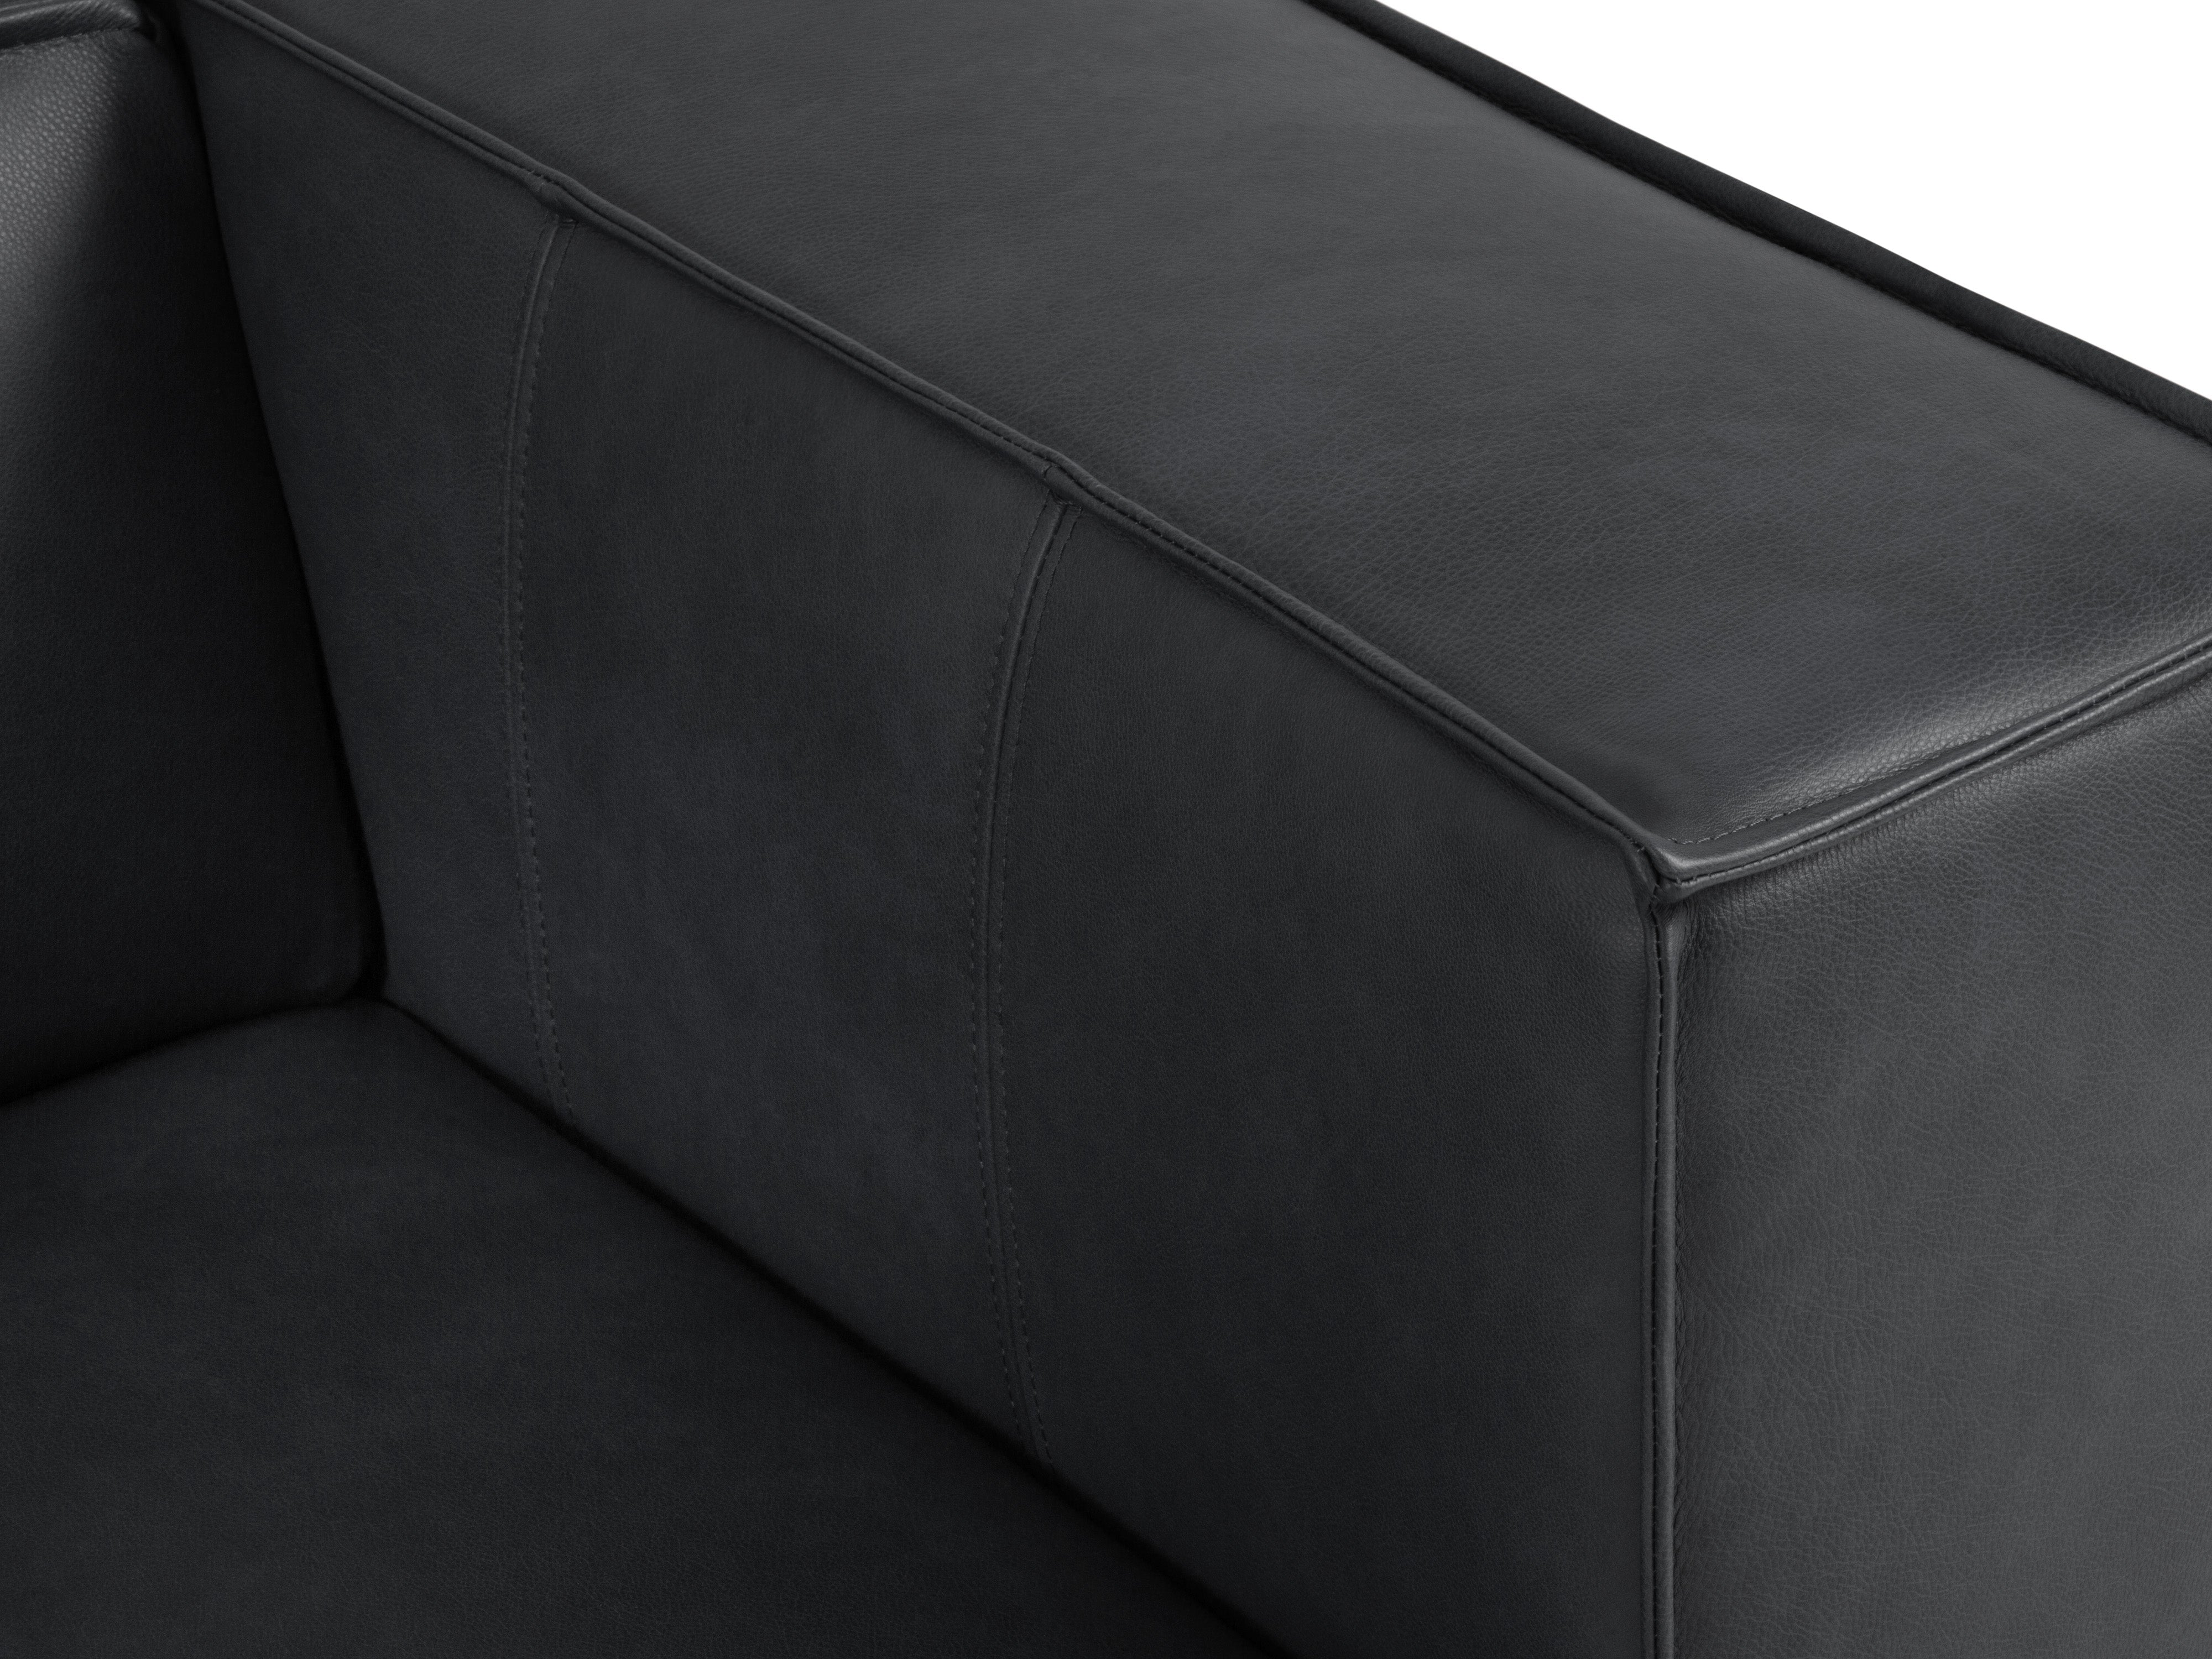 Sofa skórzana 2-osobowa MADAME grafitowy, Windsor & Co, Eye on Design